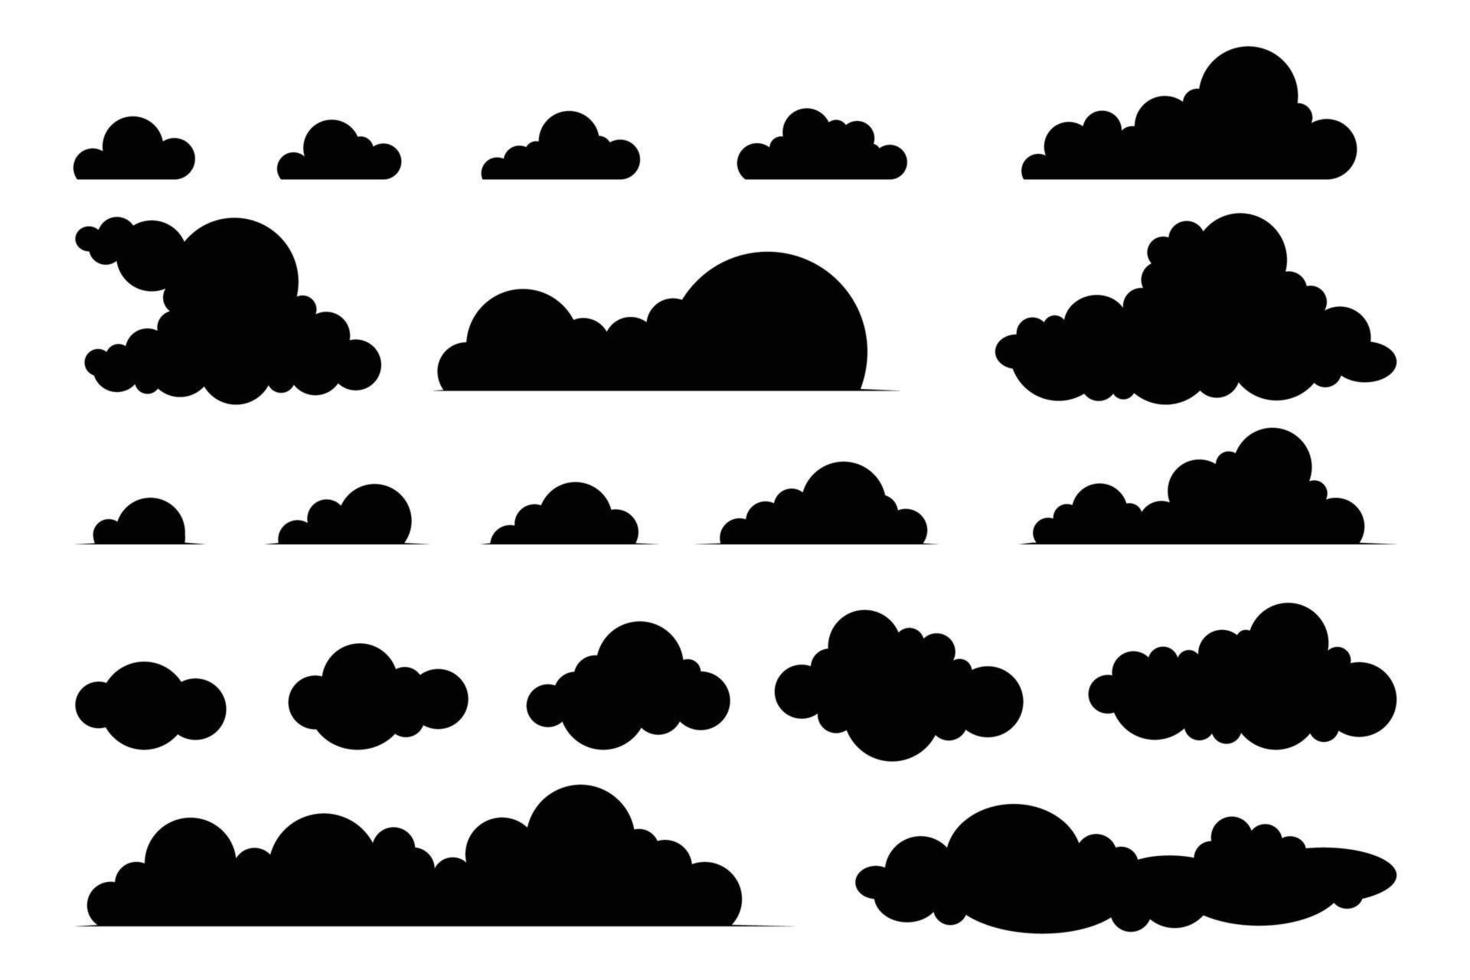 vector verzameling van zwart wolken van verschillend vormen en maten. wolk symbool voor ontwerp, website, logo, app, ui